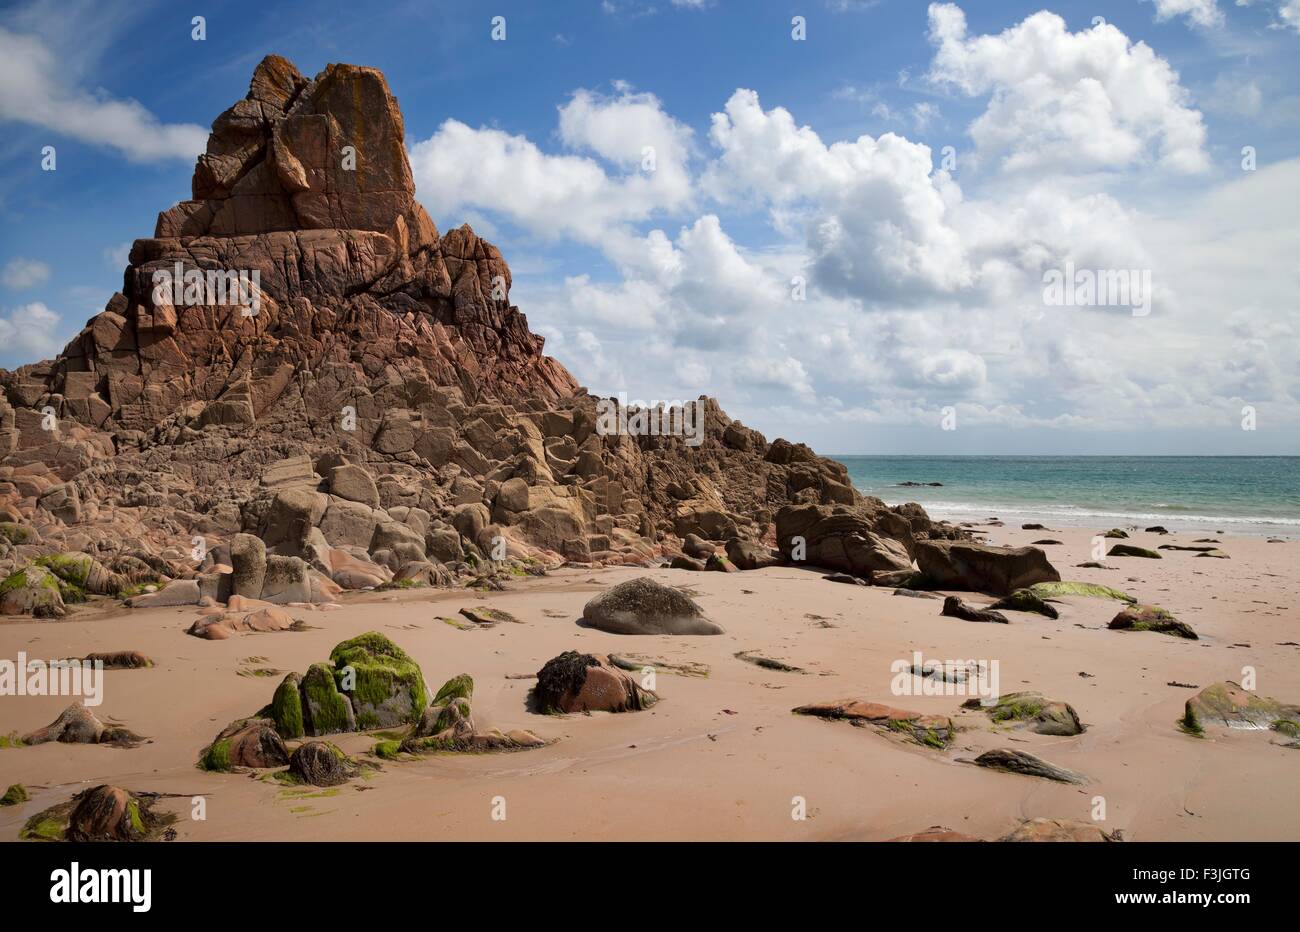 Les formations rocheuses inhabituelles à la Baie de Beauport, Jersey, Channel Islands, Grande-Bretagne Banque D'Images